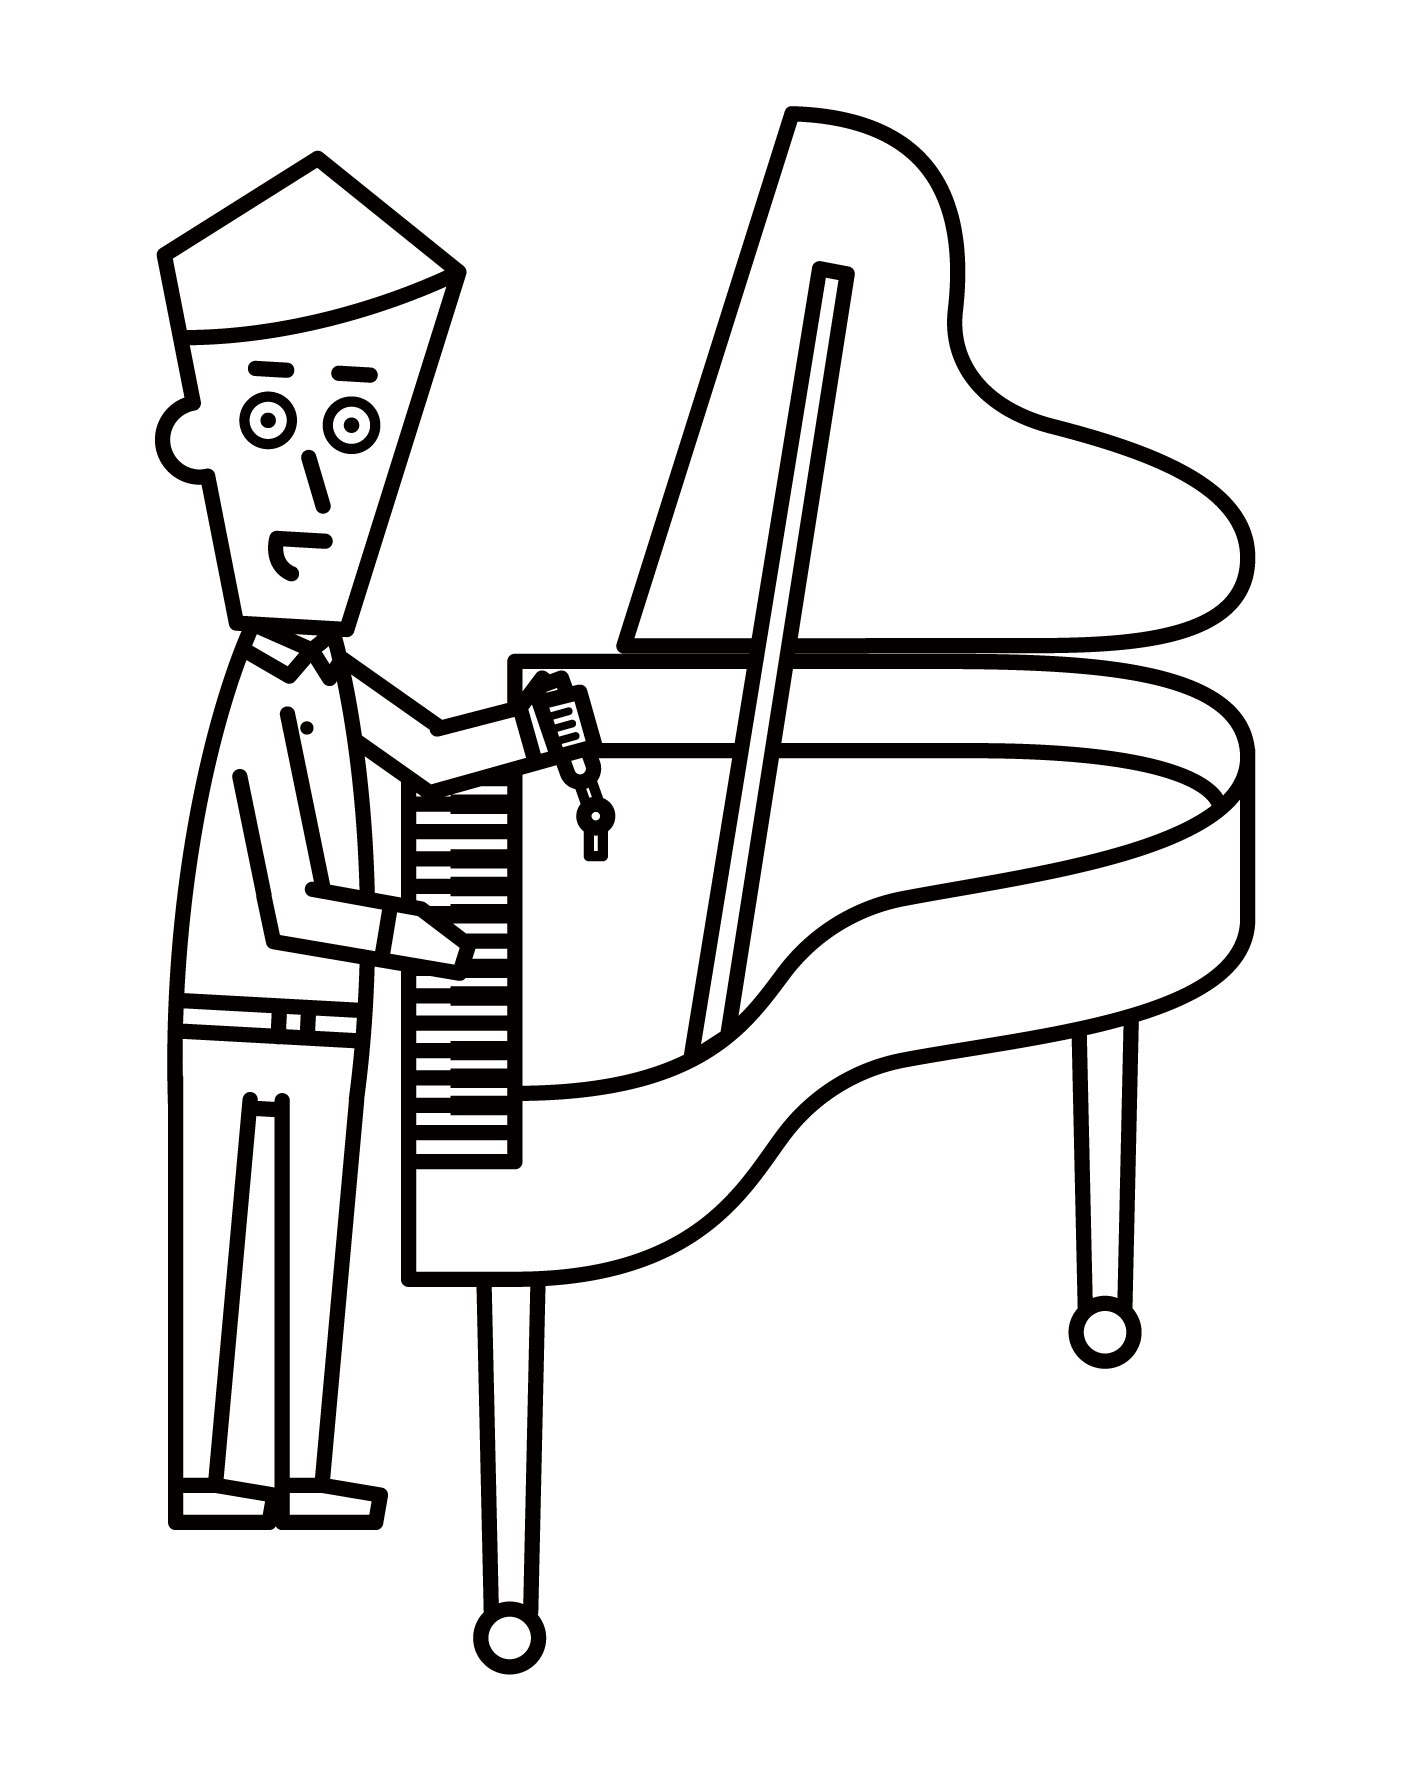 피아노 튜너(남성)의 일러스트